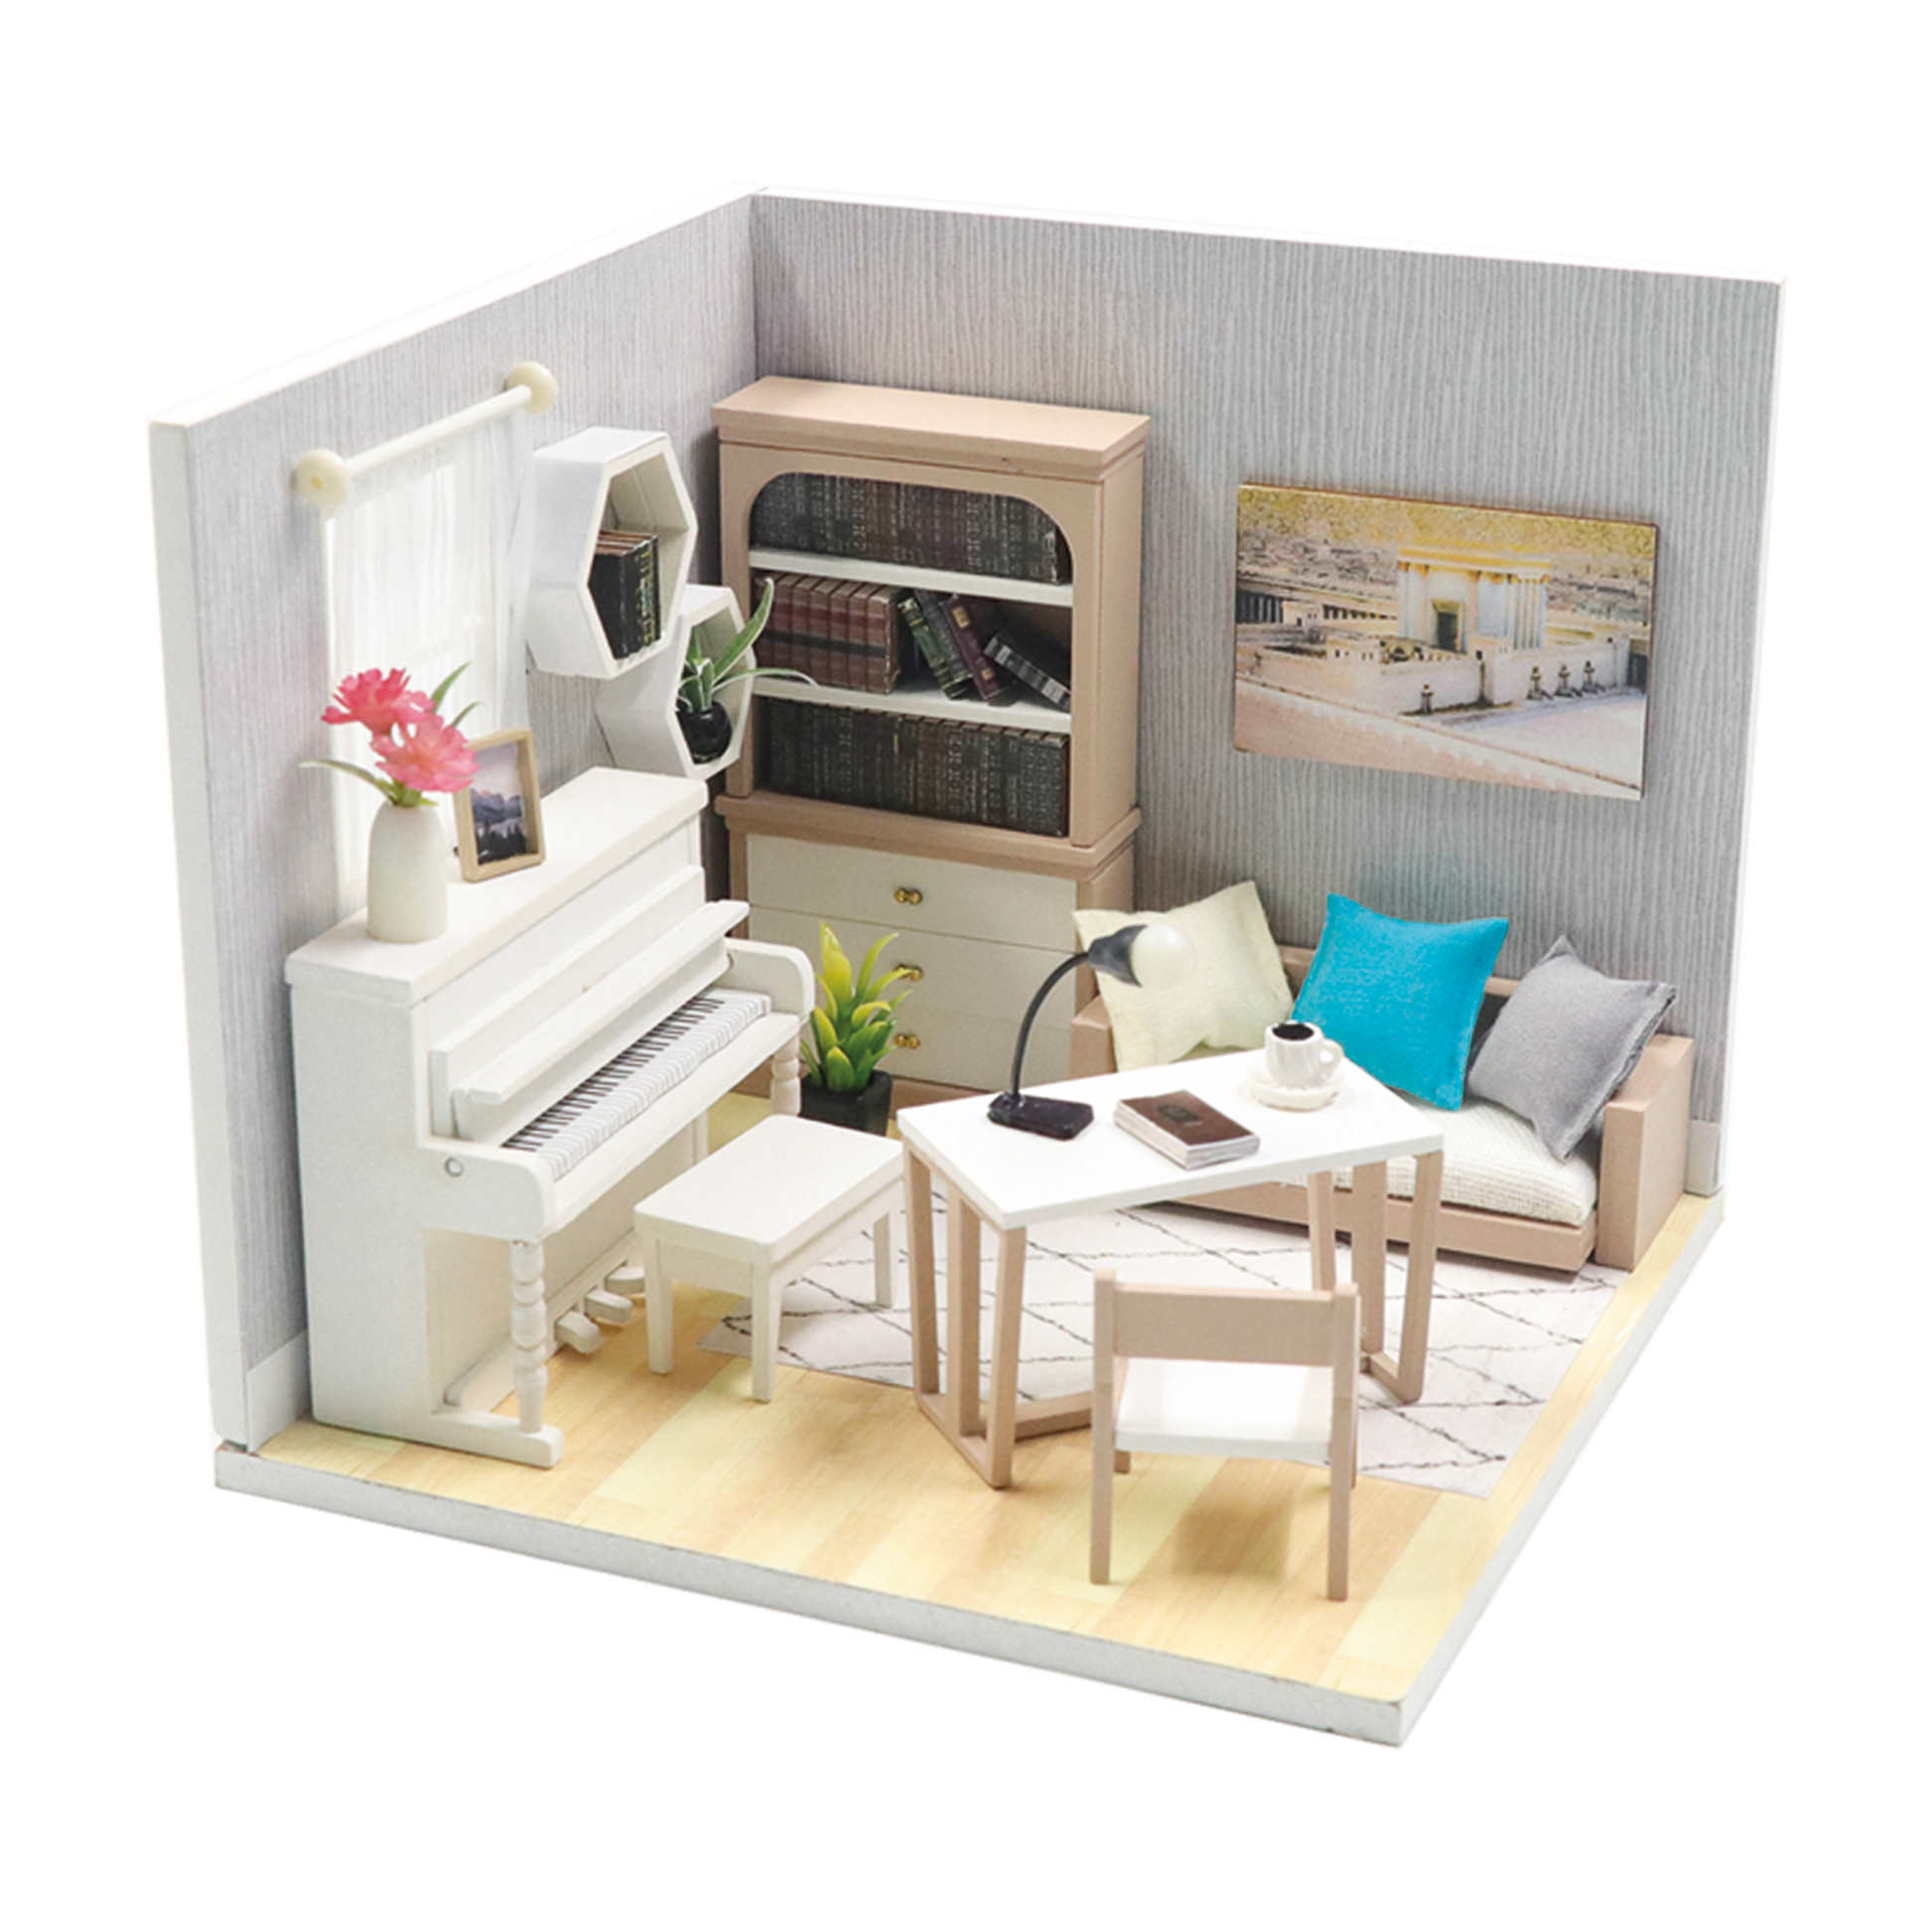 Miniature living room craft kit